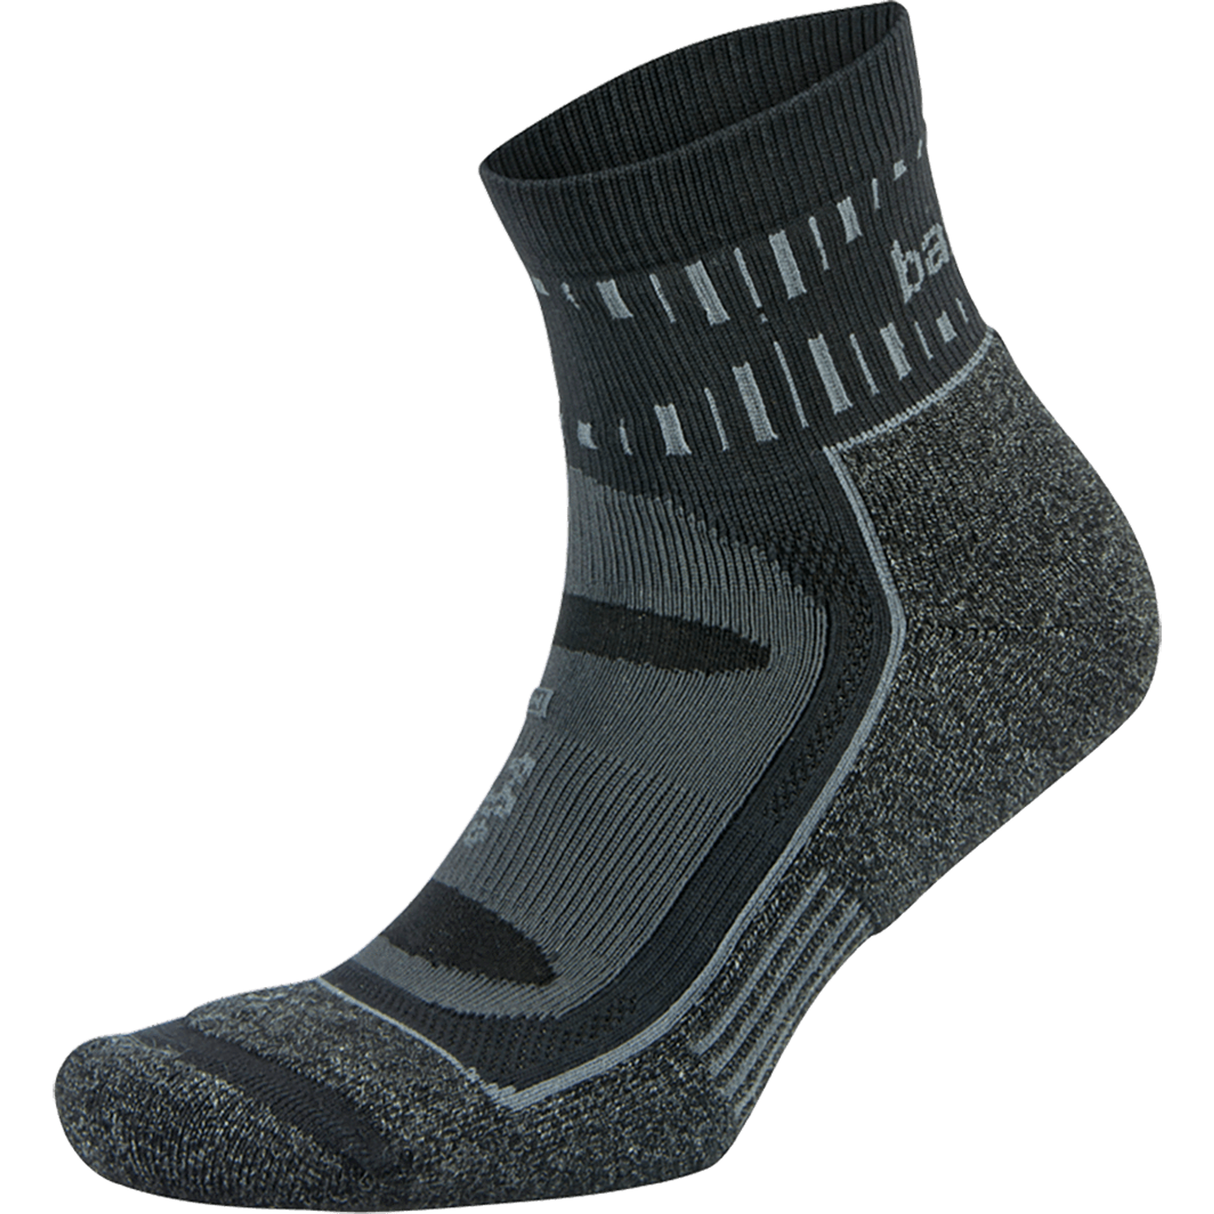 Balega Blister Resist Quarter Socks  -  Small / Gray/Black